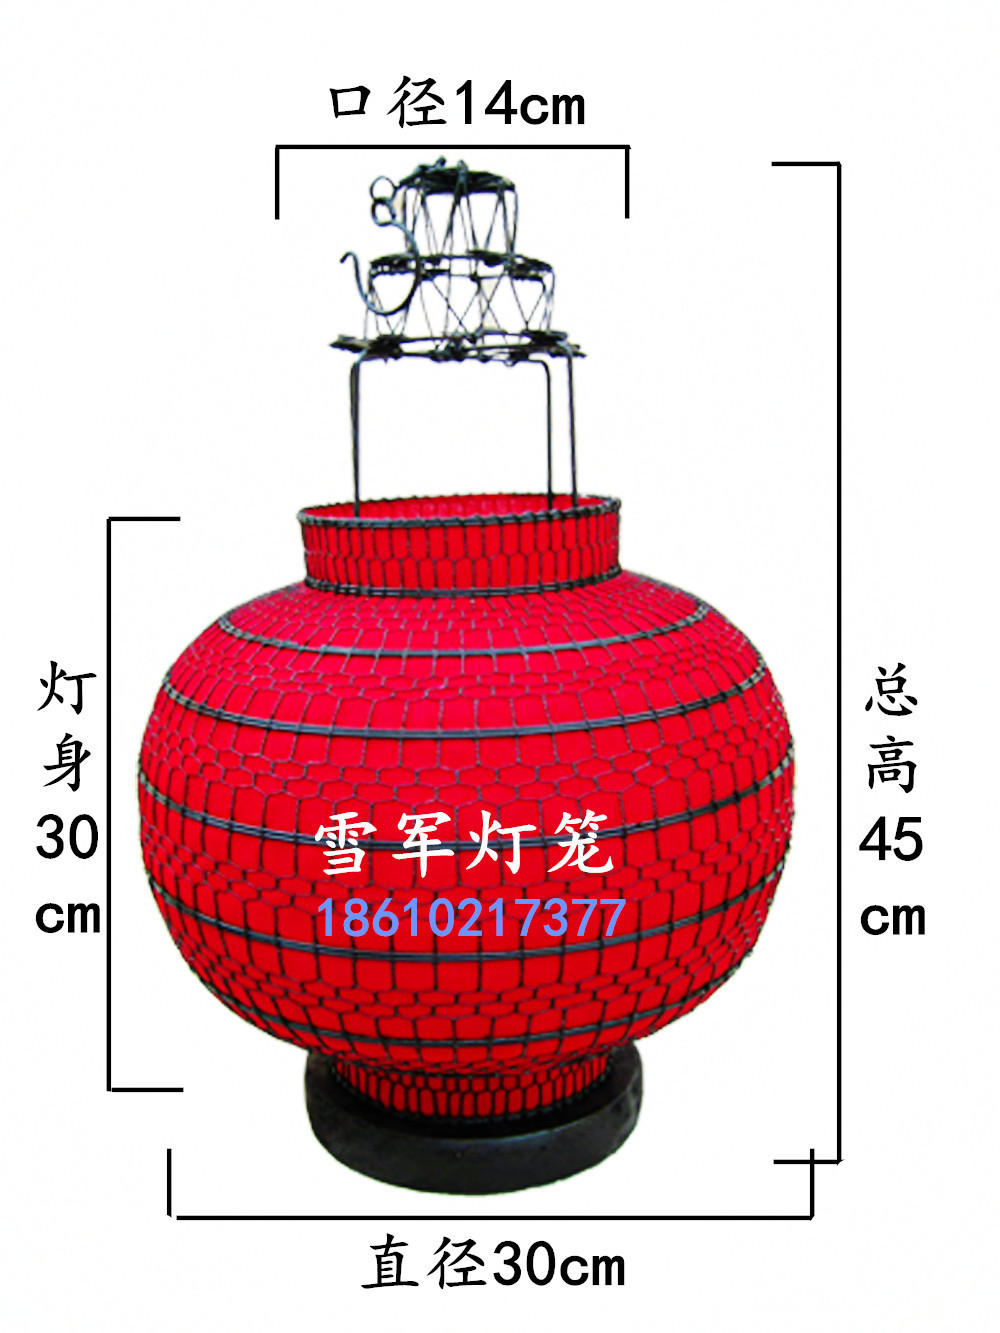 铁艺手工编织的古典灯笼,是中国传统的工艺,具有悠久的历史.